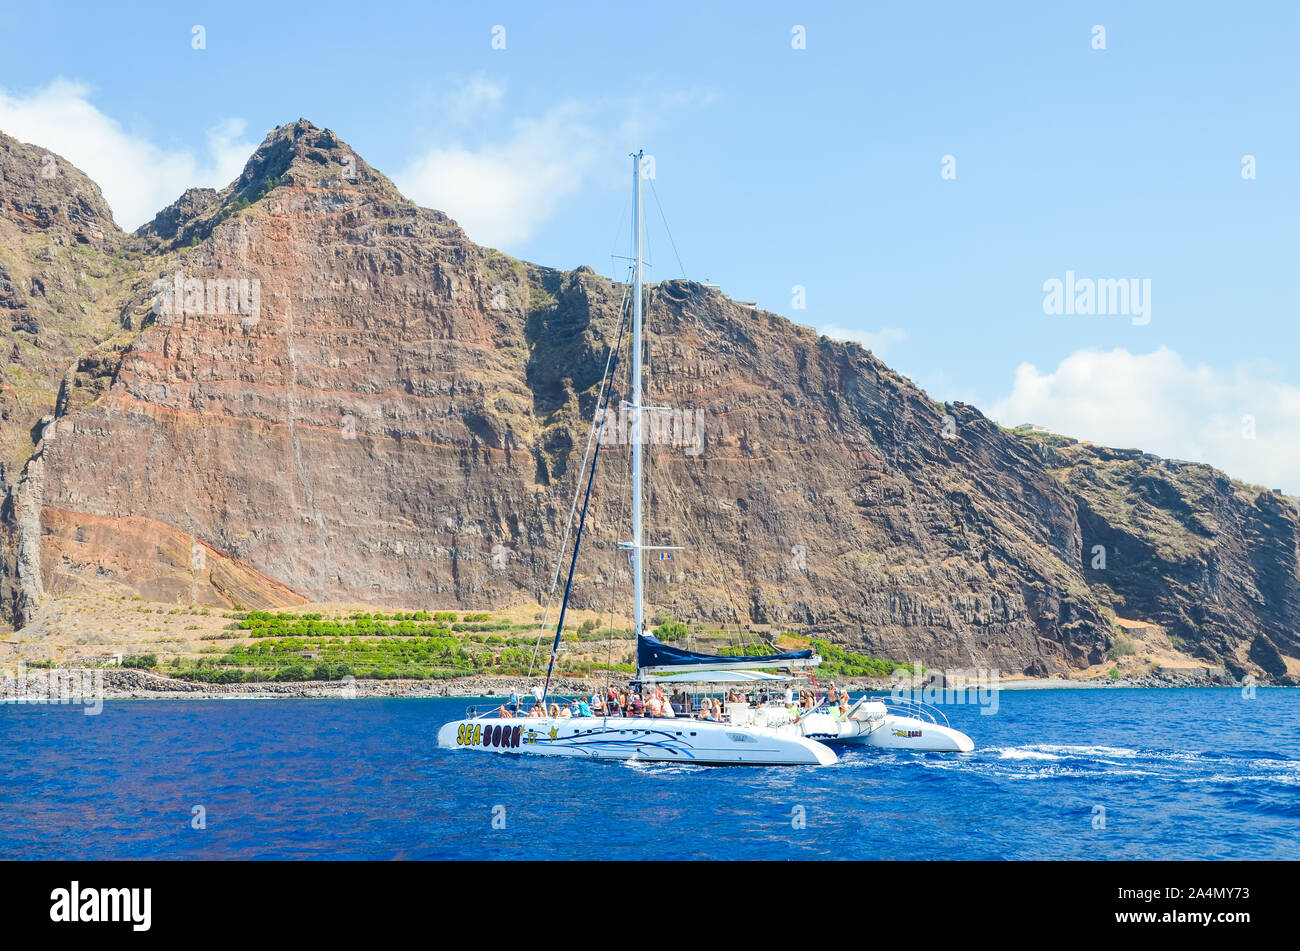 Madeira, Portogallo - Sep 10, 2019: visite turistiche barca con persone nelle acque dell'Oceano Atlantico. Rocce sull'isola di Madera in background. Avvistamento Balene, delfini viaggi. Foto Stock